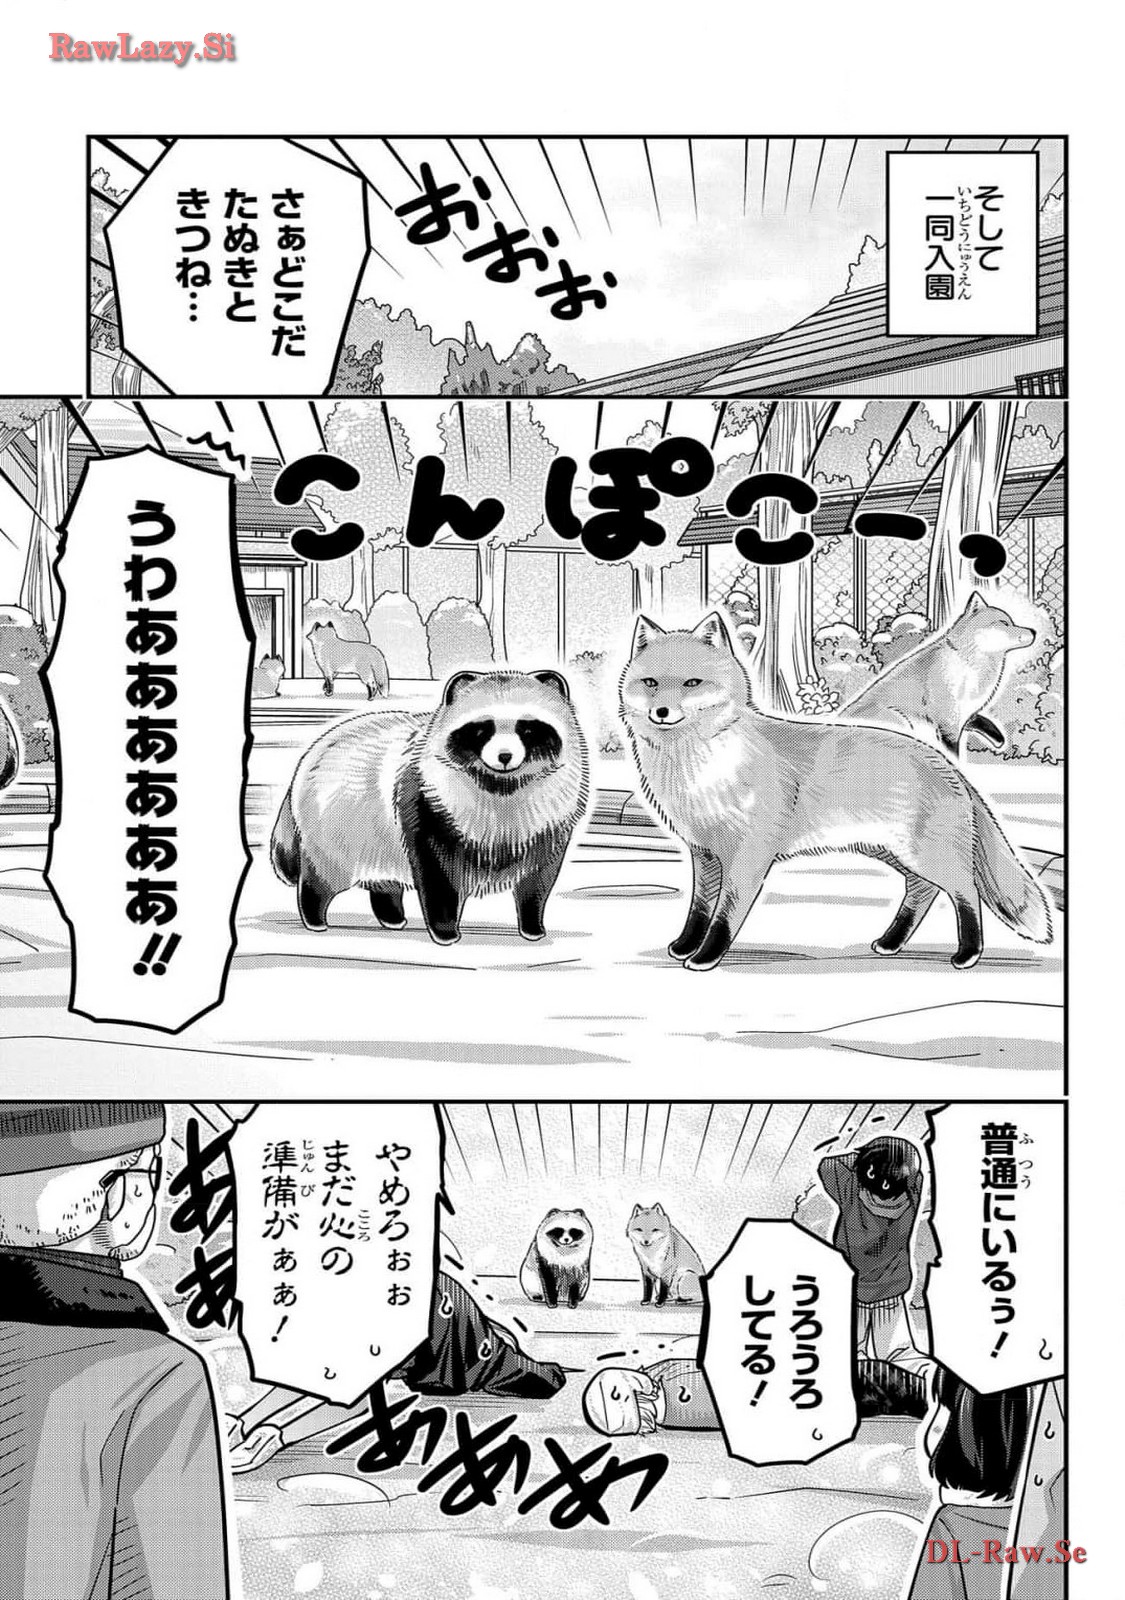 Kawaisugi Crisis - Chapter 102 - Page 5